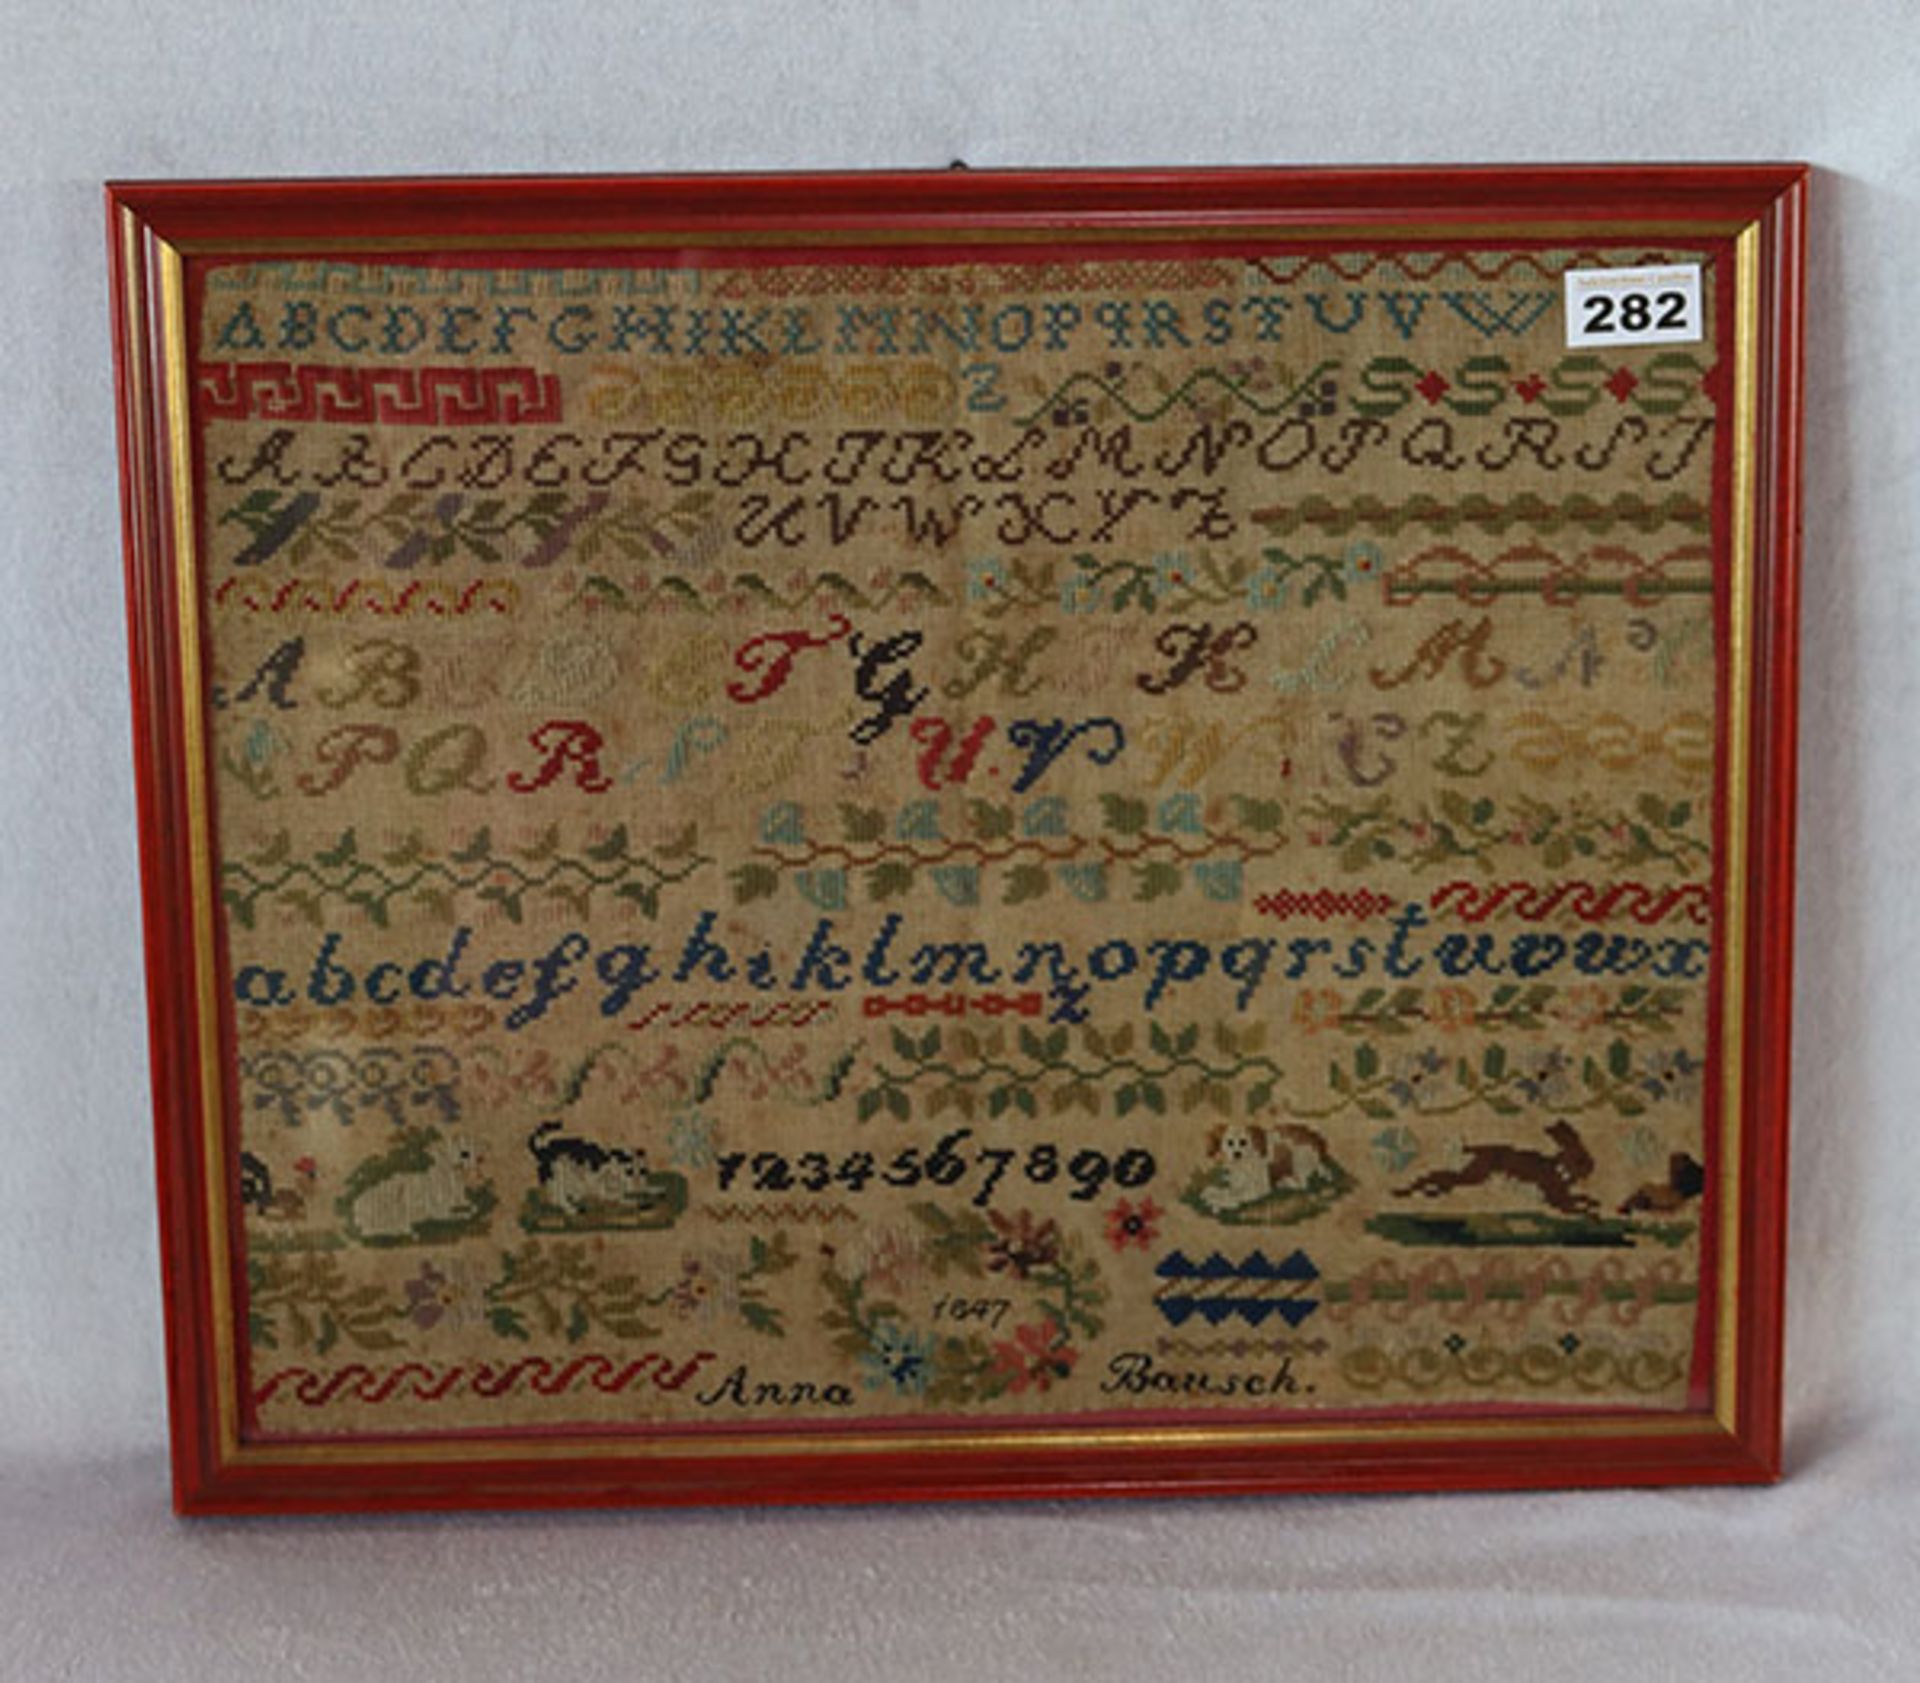 Sticktuch mit Alphabet und Zahlen, datiert 1847, unter Glas gerahmt, incl. 38 cm x 48 cm